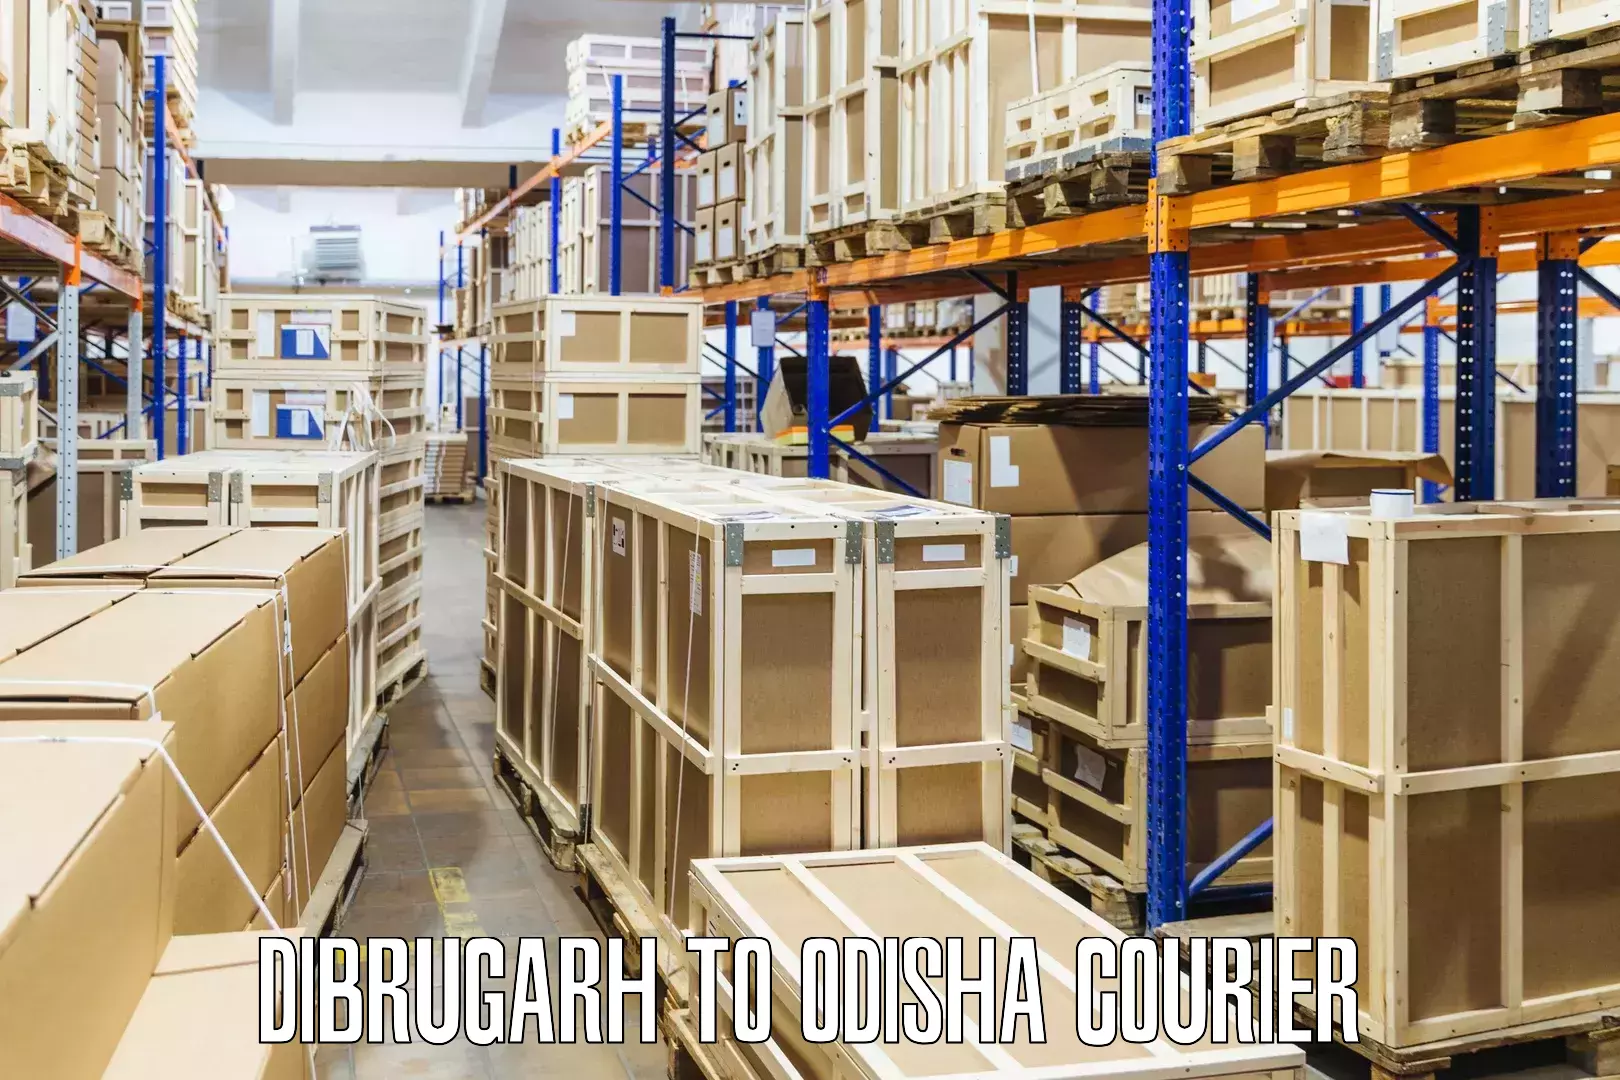 On-demand courier Dibrugarh to Melchhamunda